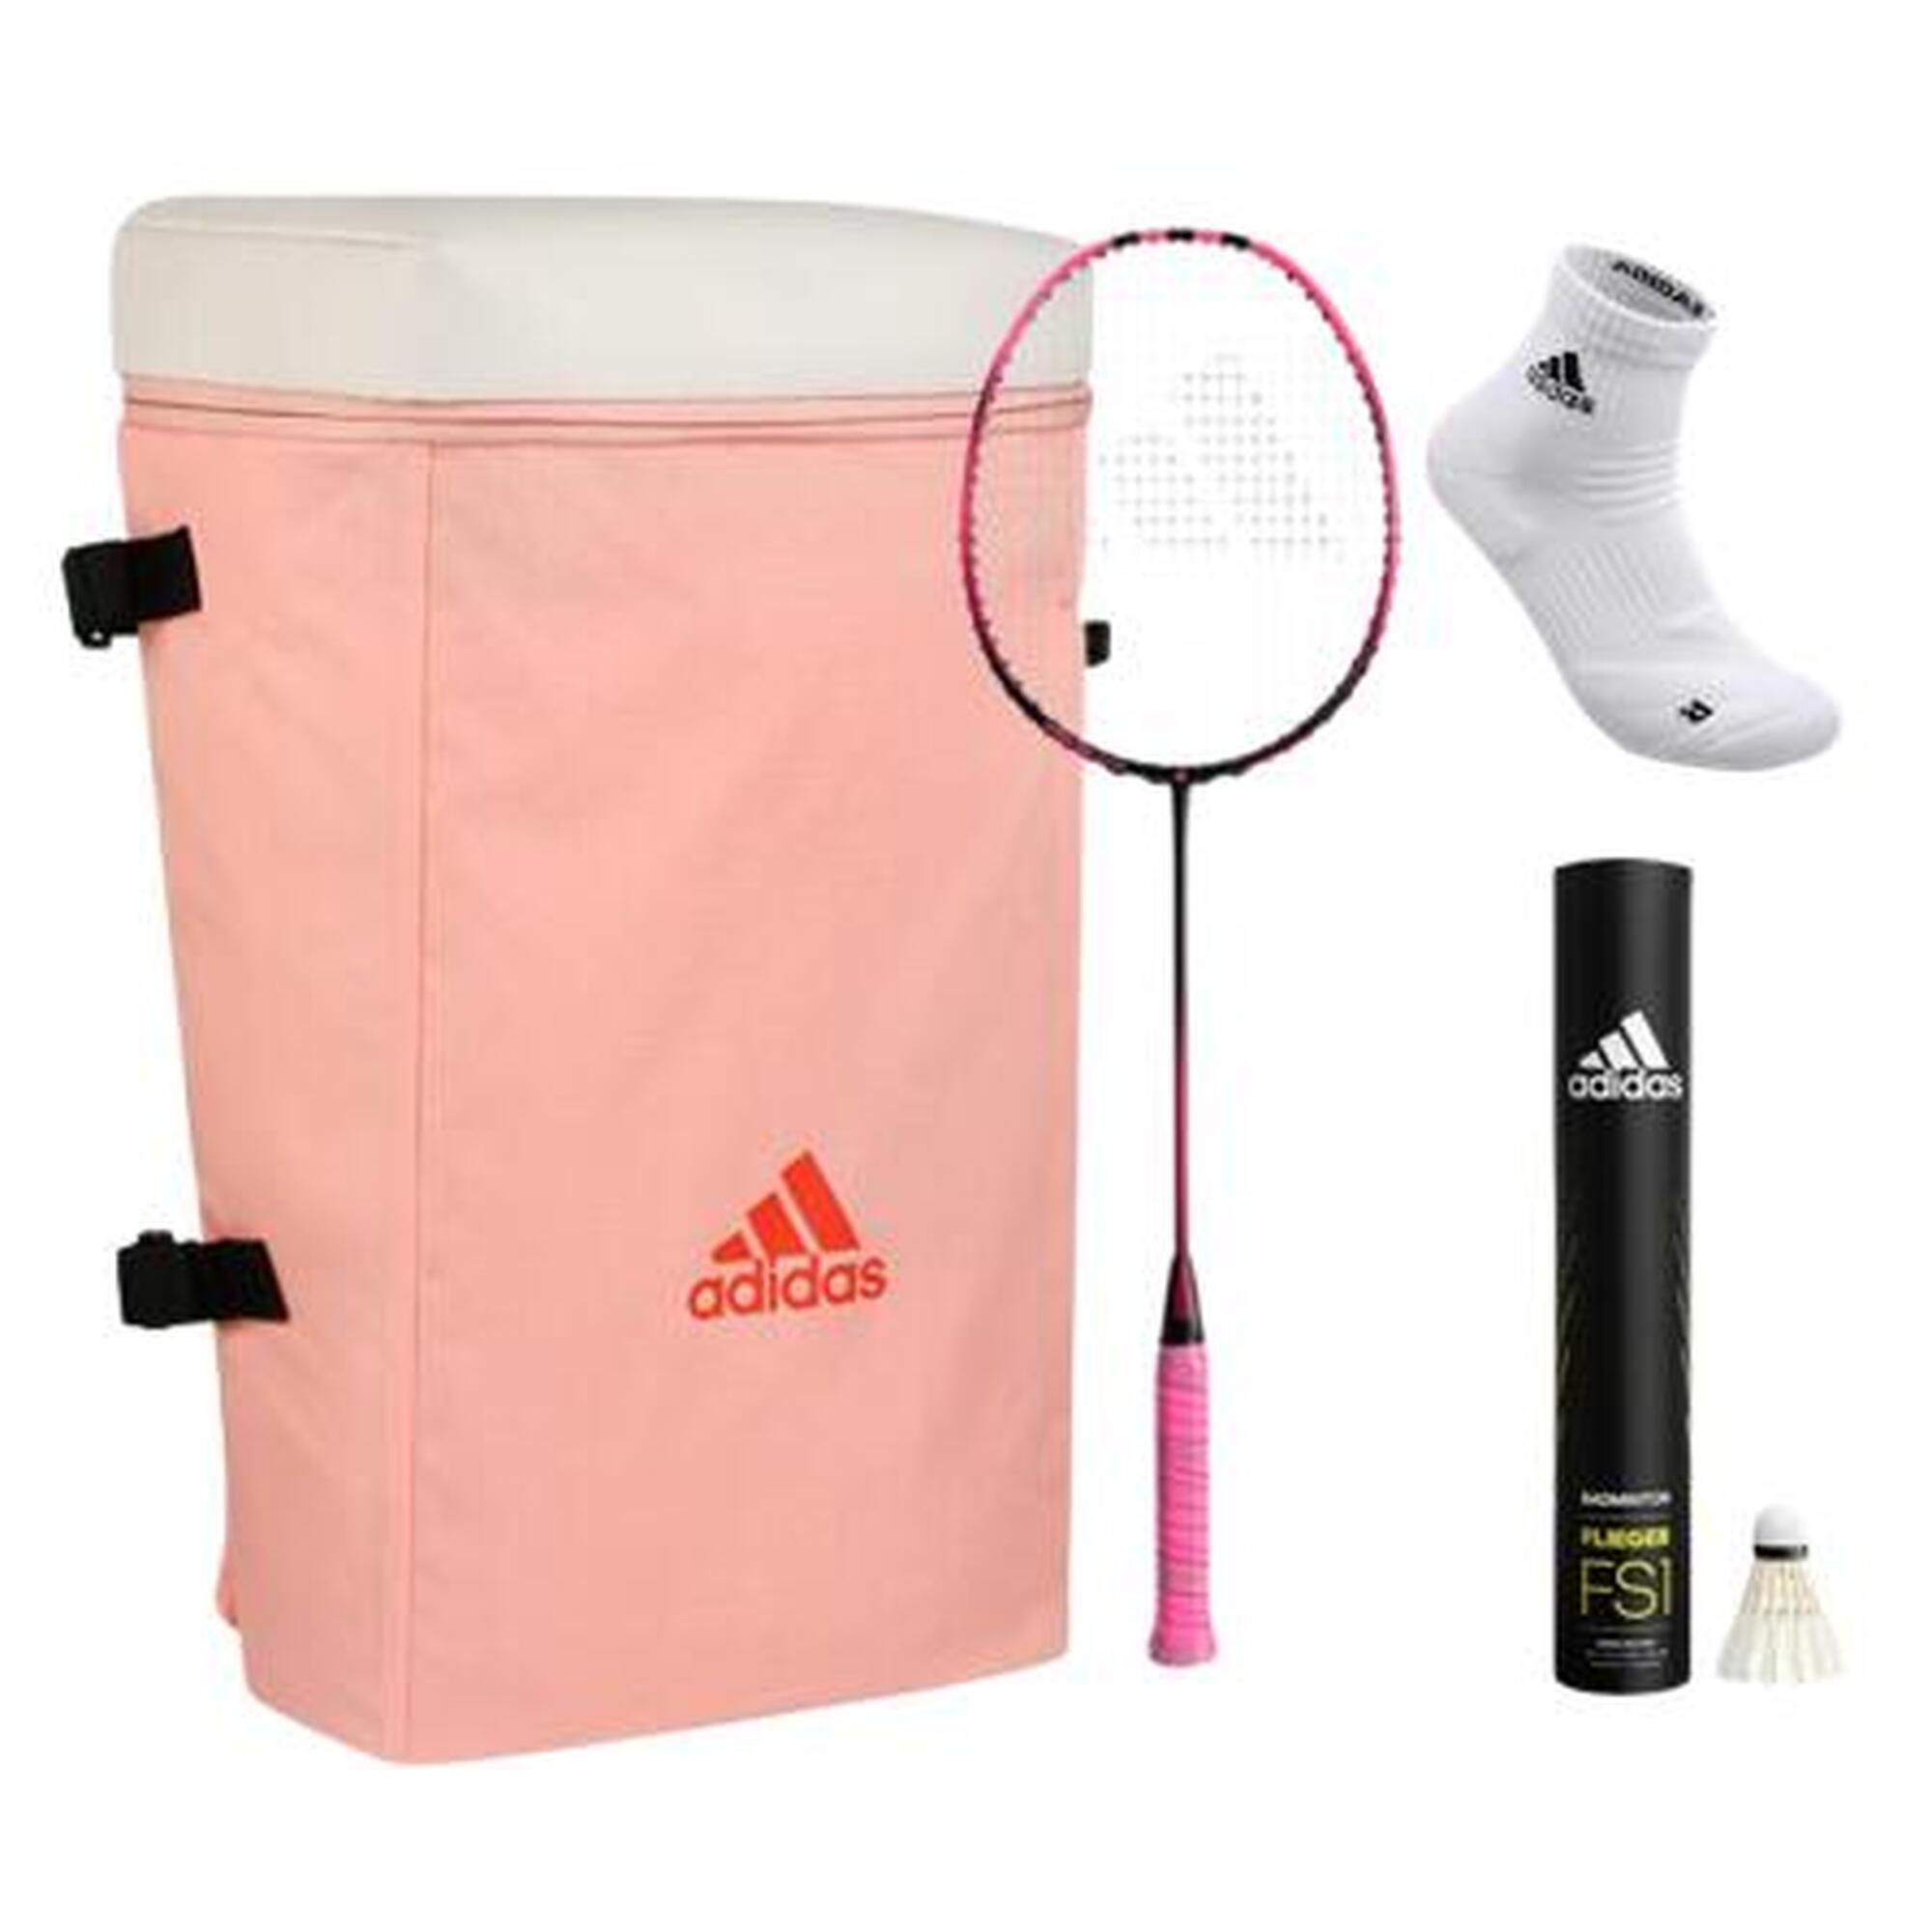 adidas羽毛球套裝（球拍+背包+襪子+羽毛球）- 粉色